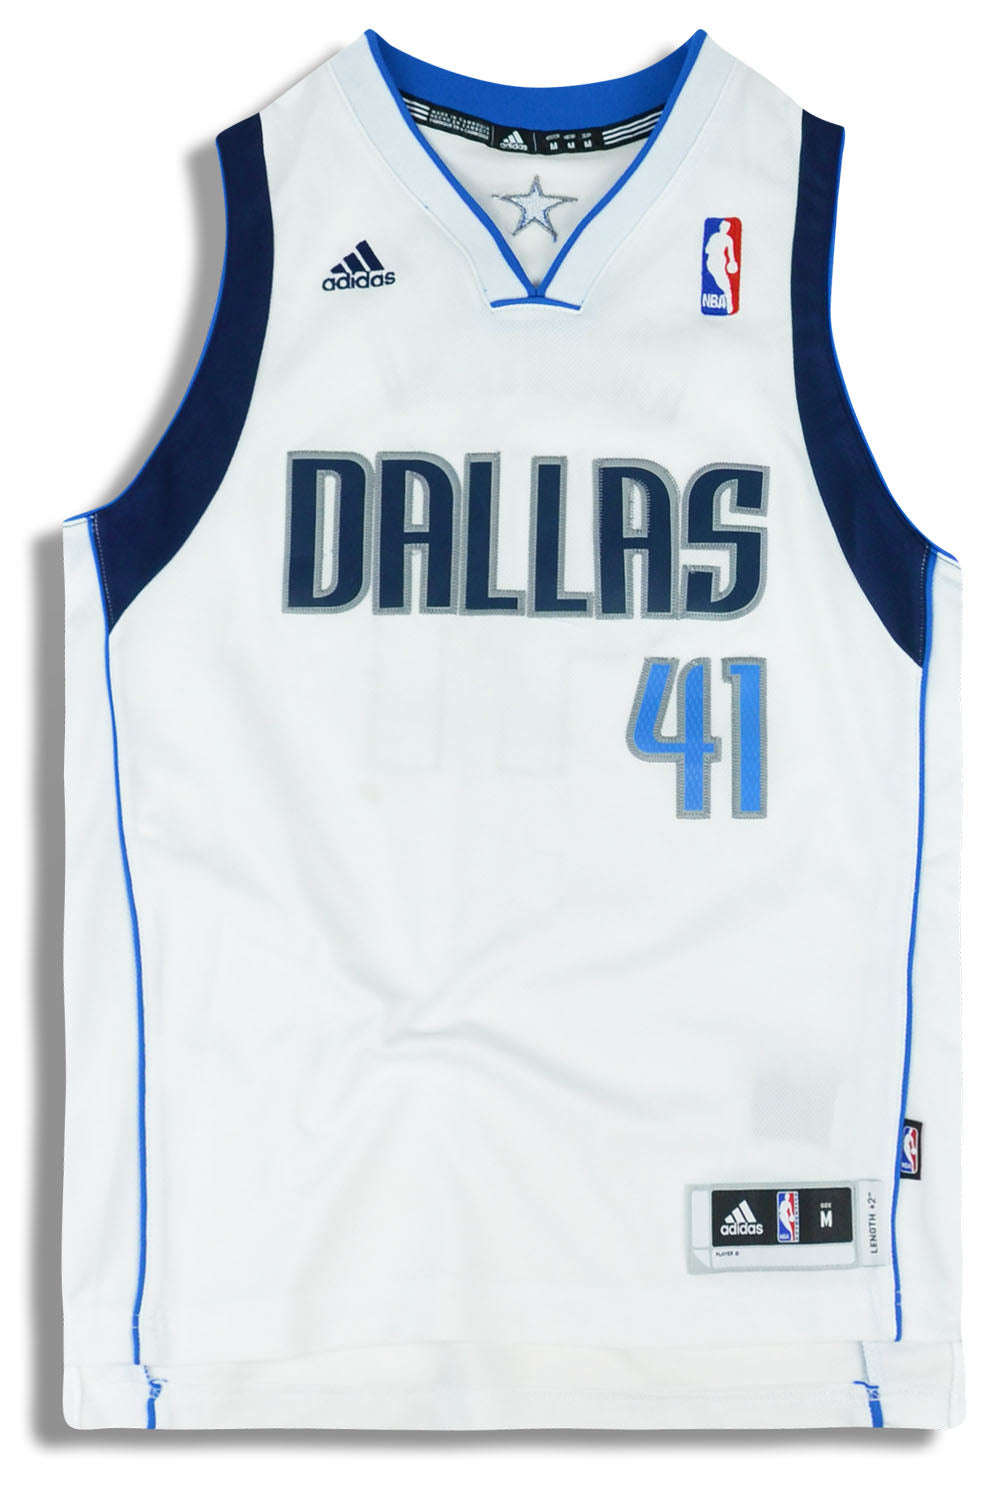 Dallas Mavericks [Statement Edition] Jersey – Dirk Nowitzki – ThanoSport